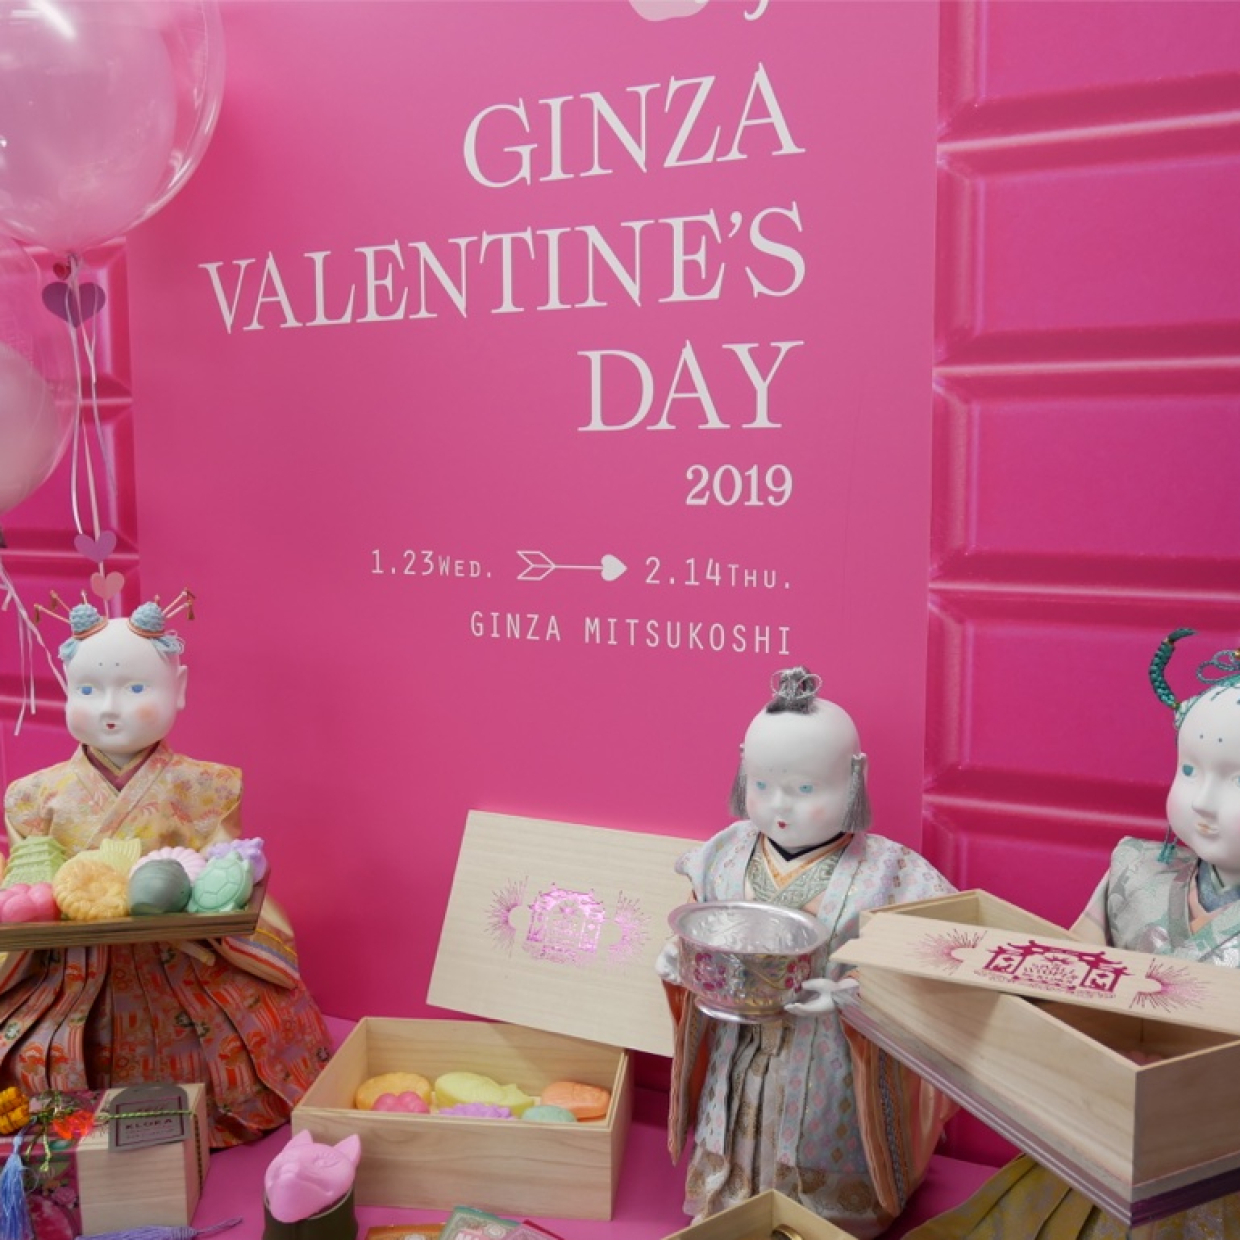  今年はピンクがテーマ！【GINZA VALENTINE’S DAY 2019】のおすすめチョコ3選 